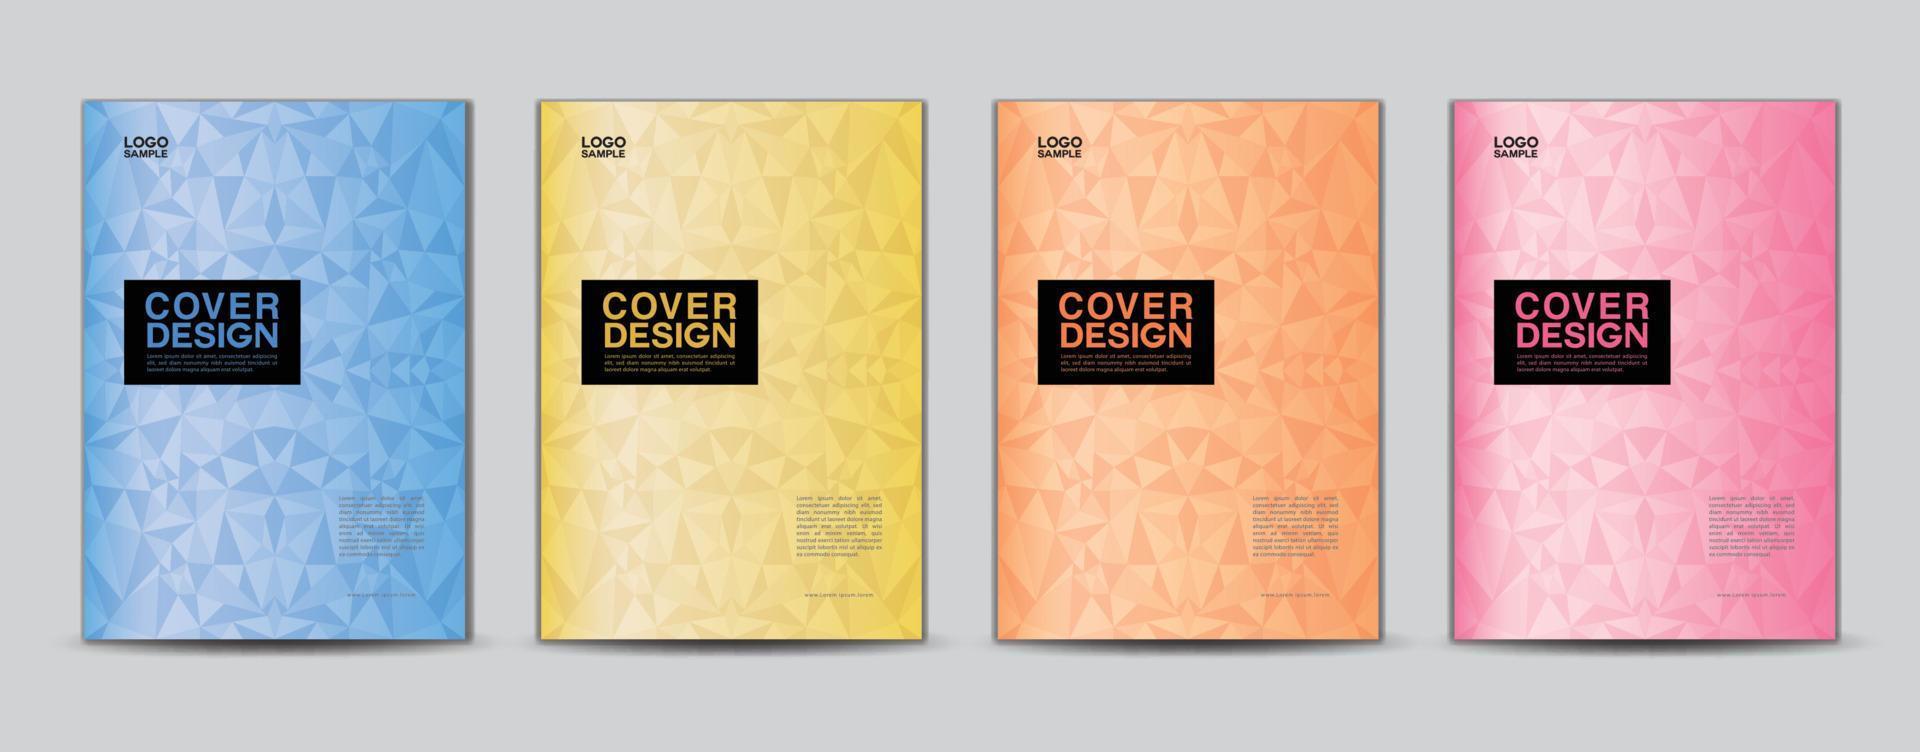 vetor de modelo de design de capa de polígono, design de capa de relatório anual de negócios, modelo de folheto, capa de folheto, livro, apresentação